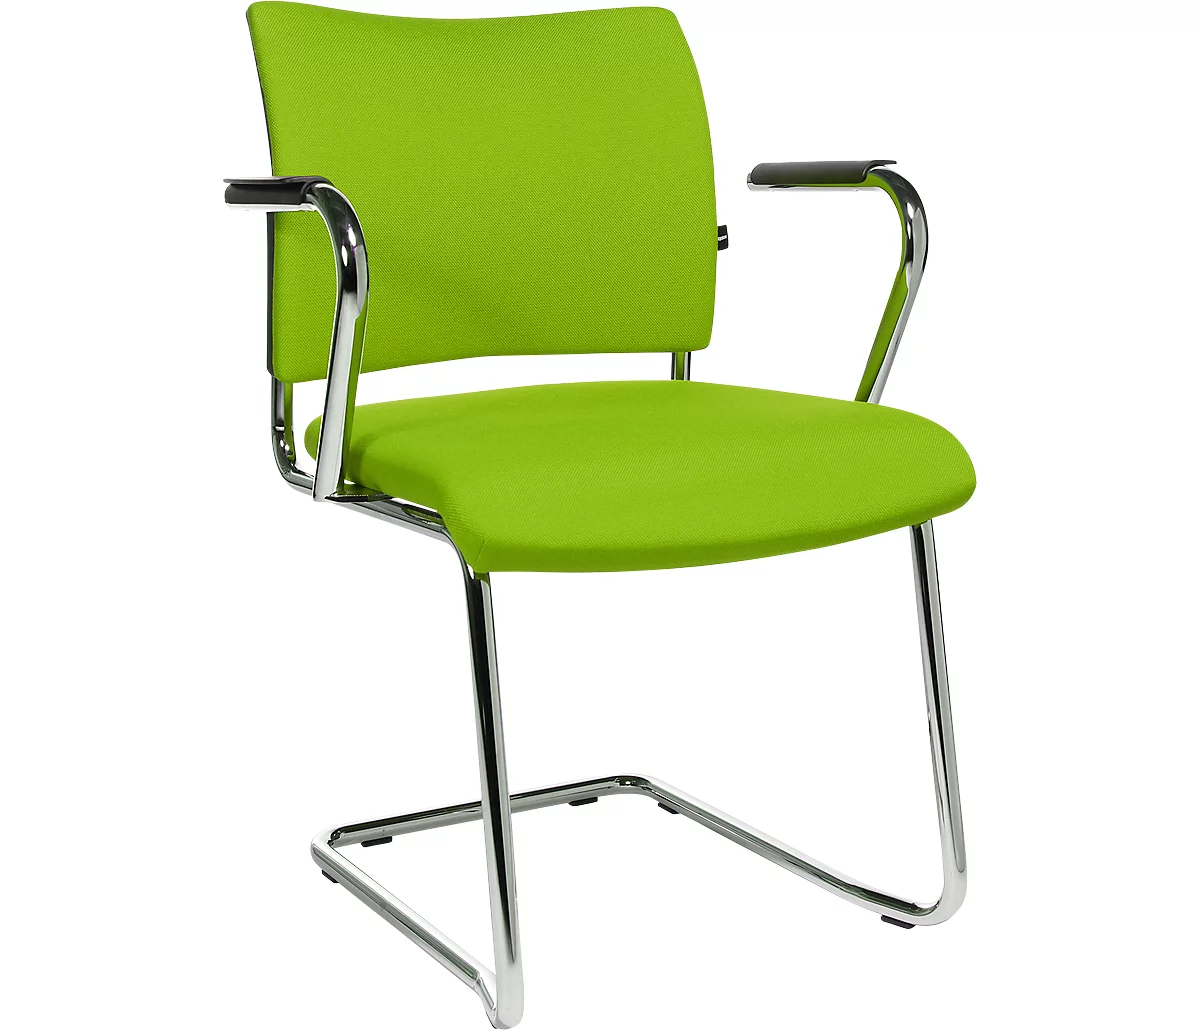 Silla cantilever SEAT POINT, acolchado, sin reposabrazos, apilable, juego de 2, verde